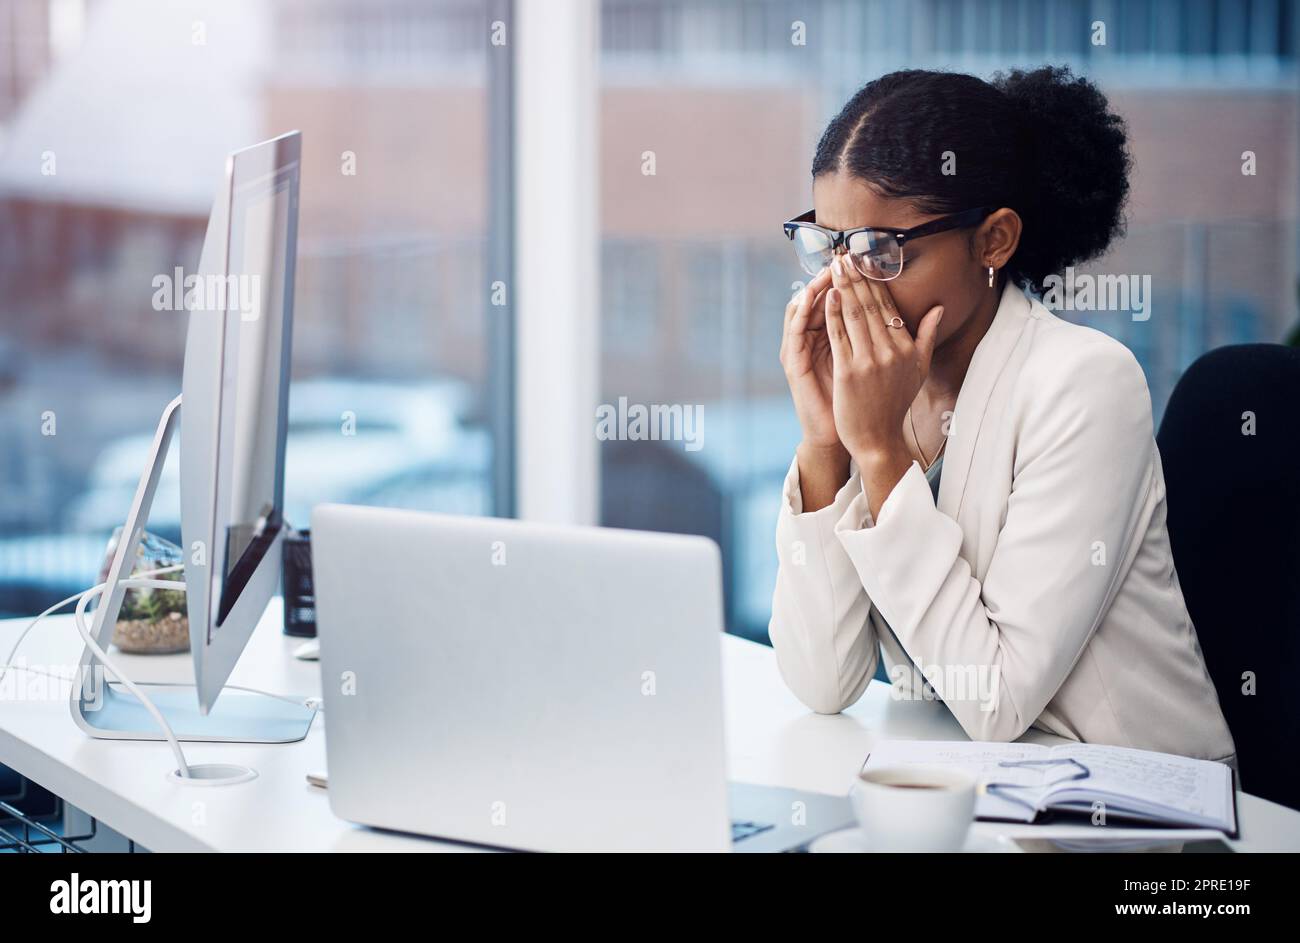 Von ehrgeizig bis ausgebrannt. Eine junge Geschäftsfrau, die gestresst an ihrem Schreibtisch in einem modernen Büro aussieht. Stockfoto